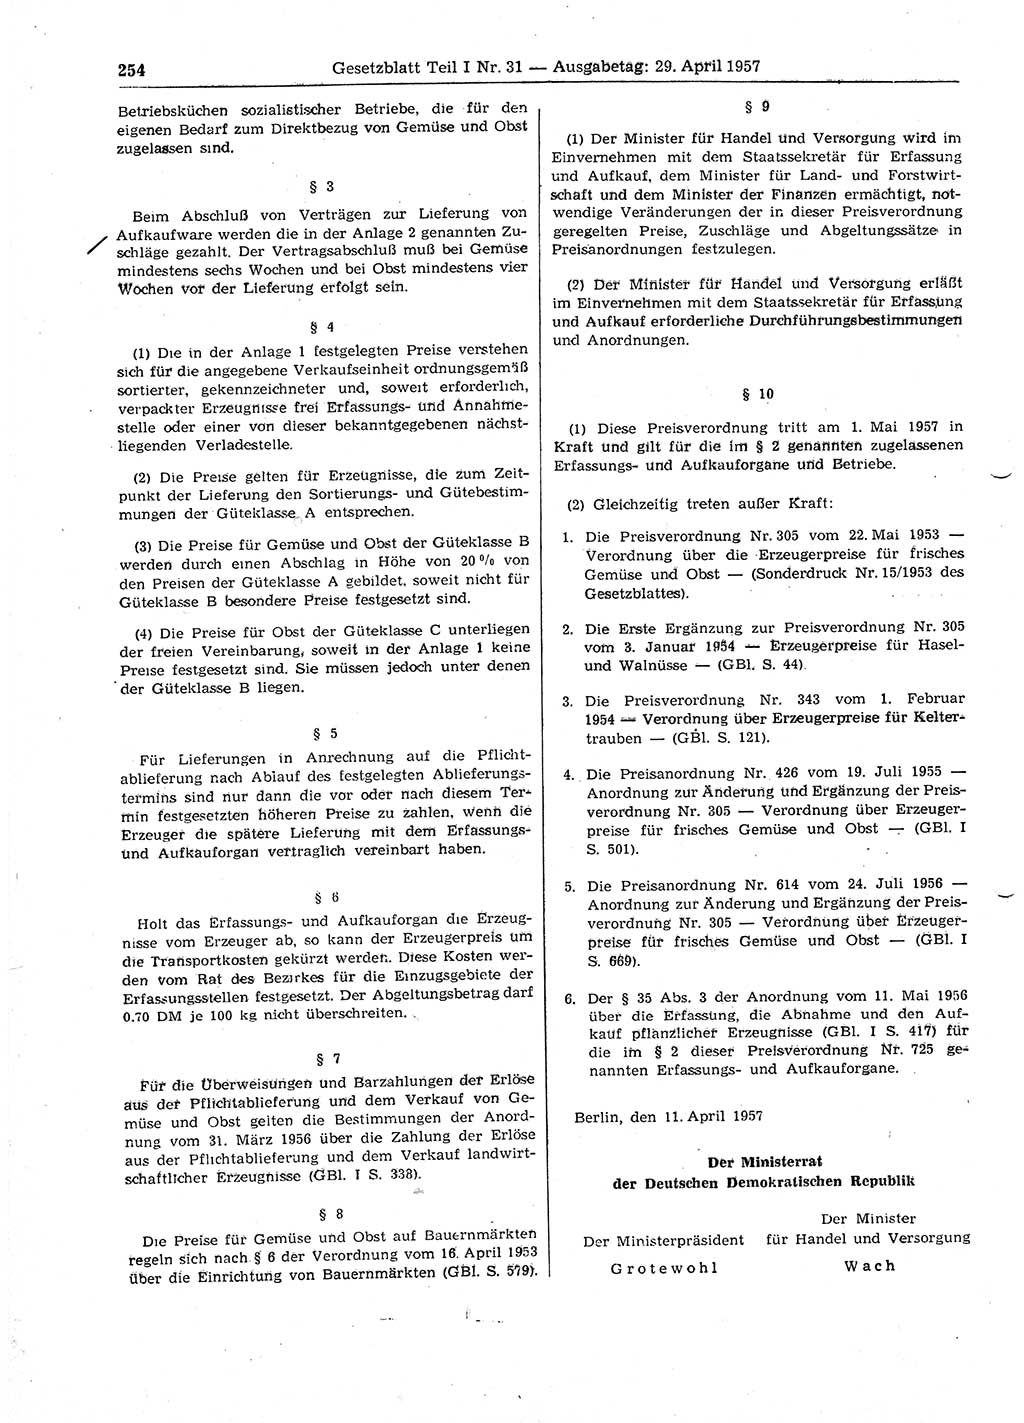 Gesetzblatt (GBl.) der Deutschen Demokratischen Republik (DDR) Teil Ⅰ 1957, Seite 254 (GBl. DDR Ⅰ 1957, S. 254)